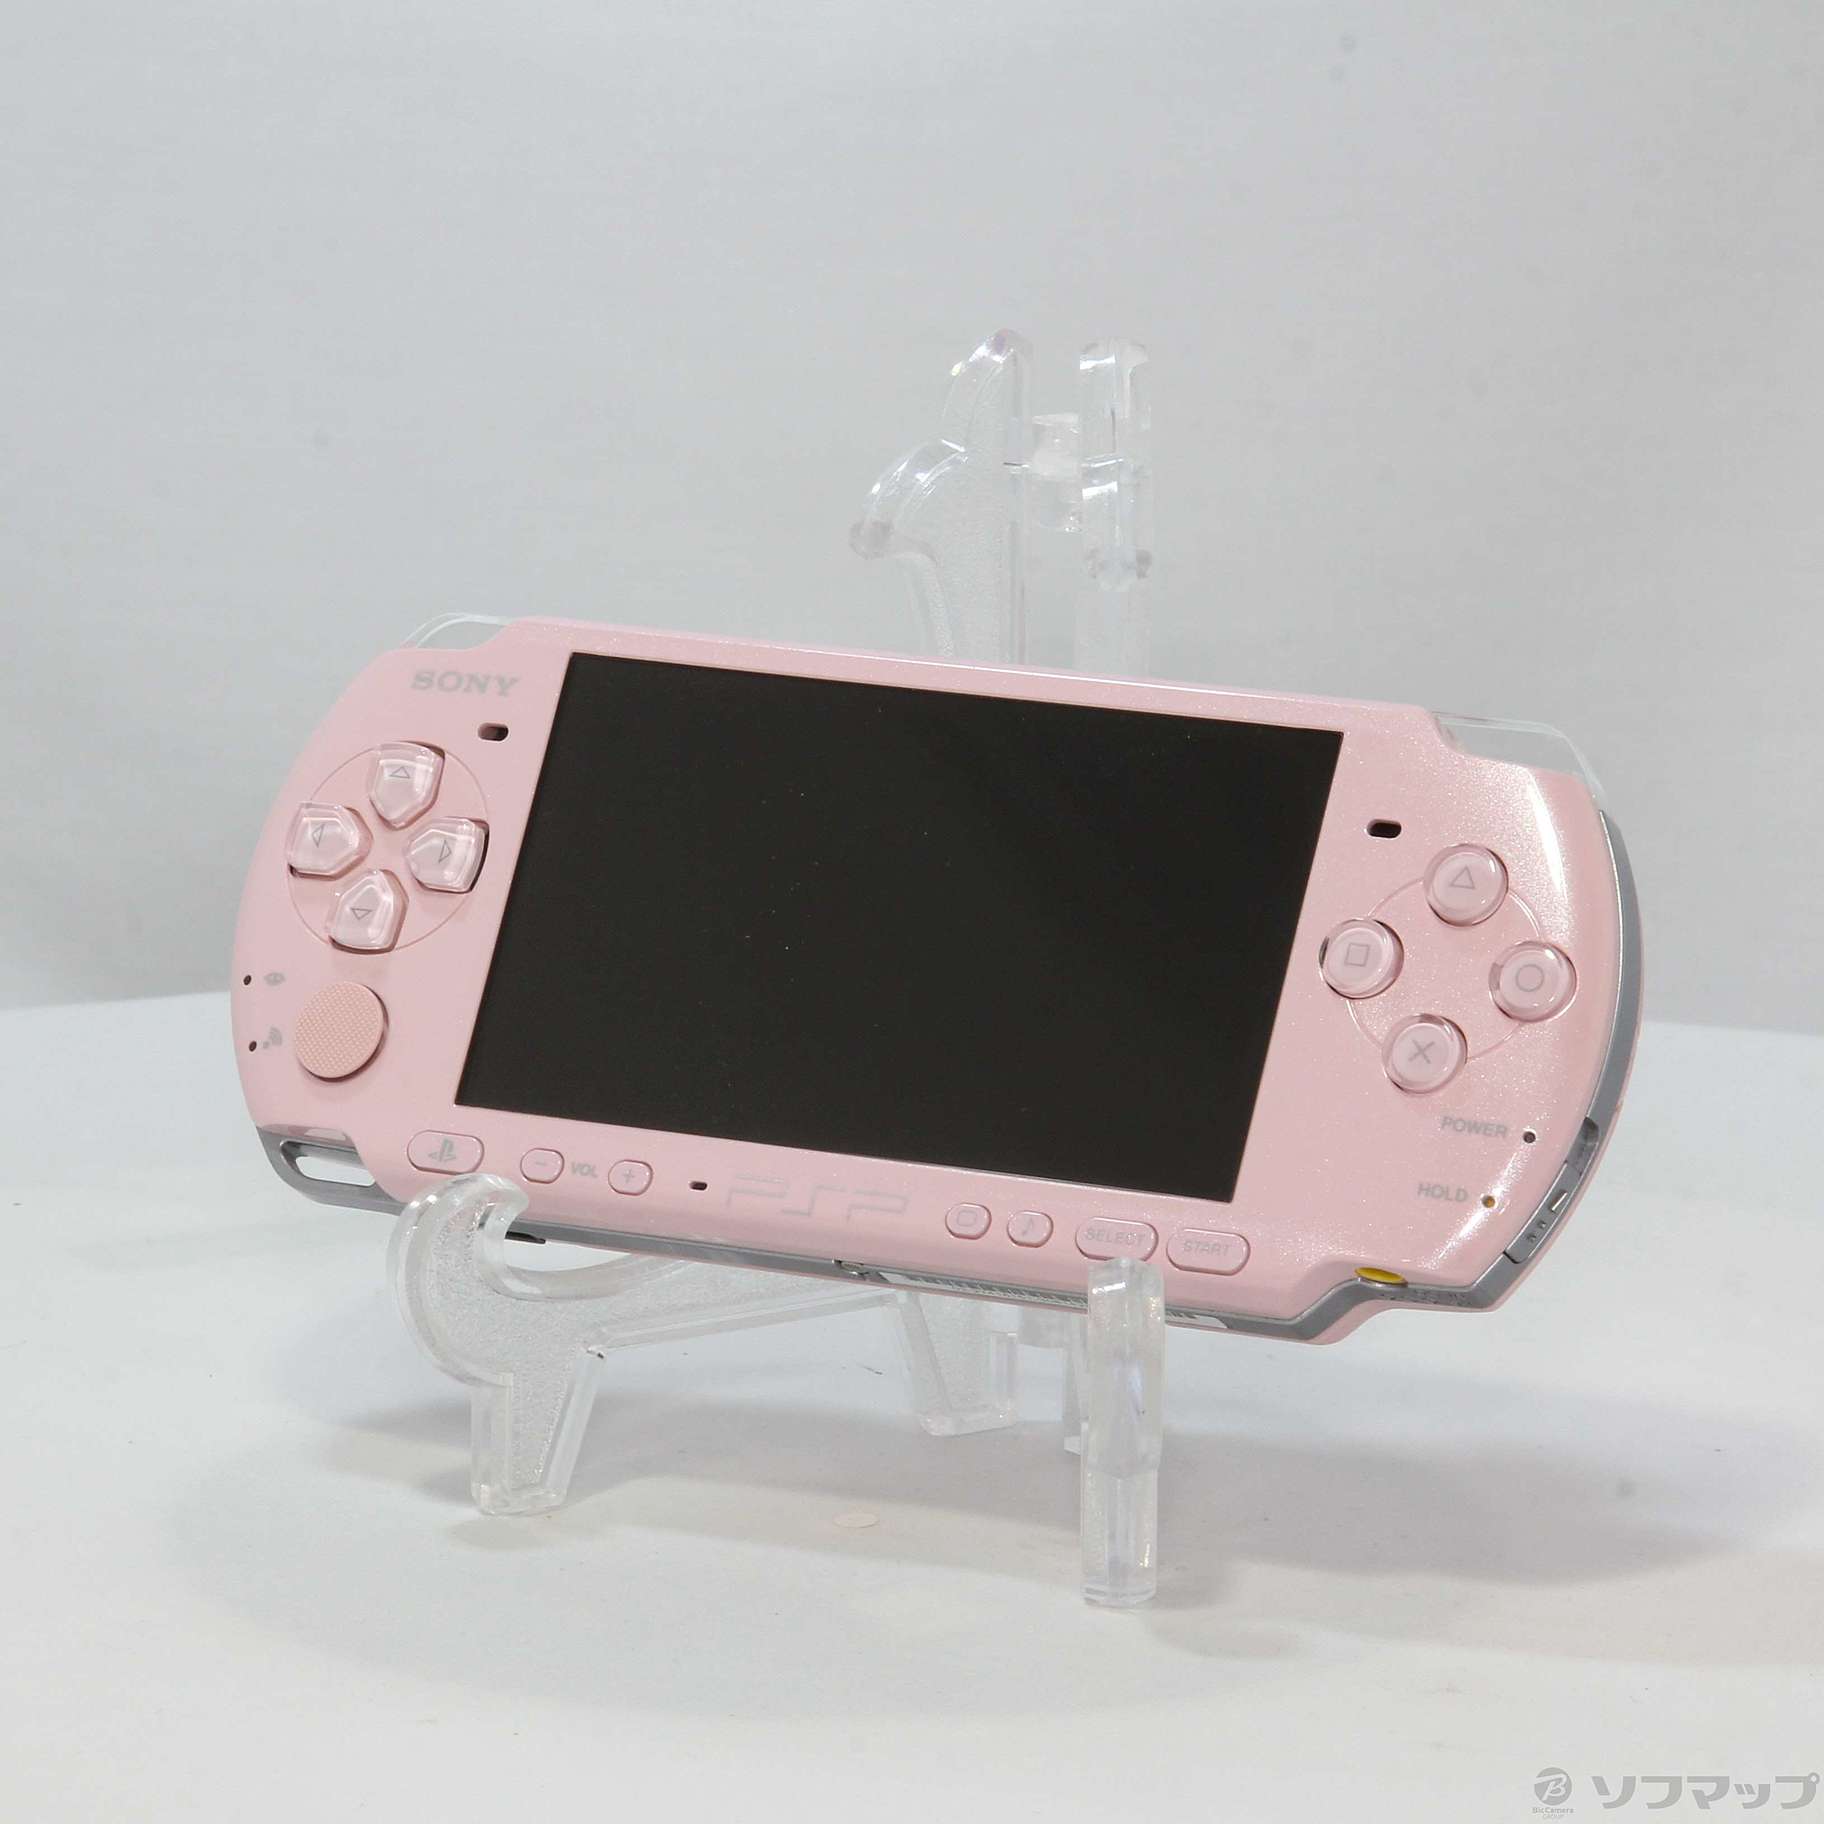 新品未開封 プレイステーションポータブル ブロッサムピンク PSP-3000ZP